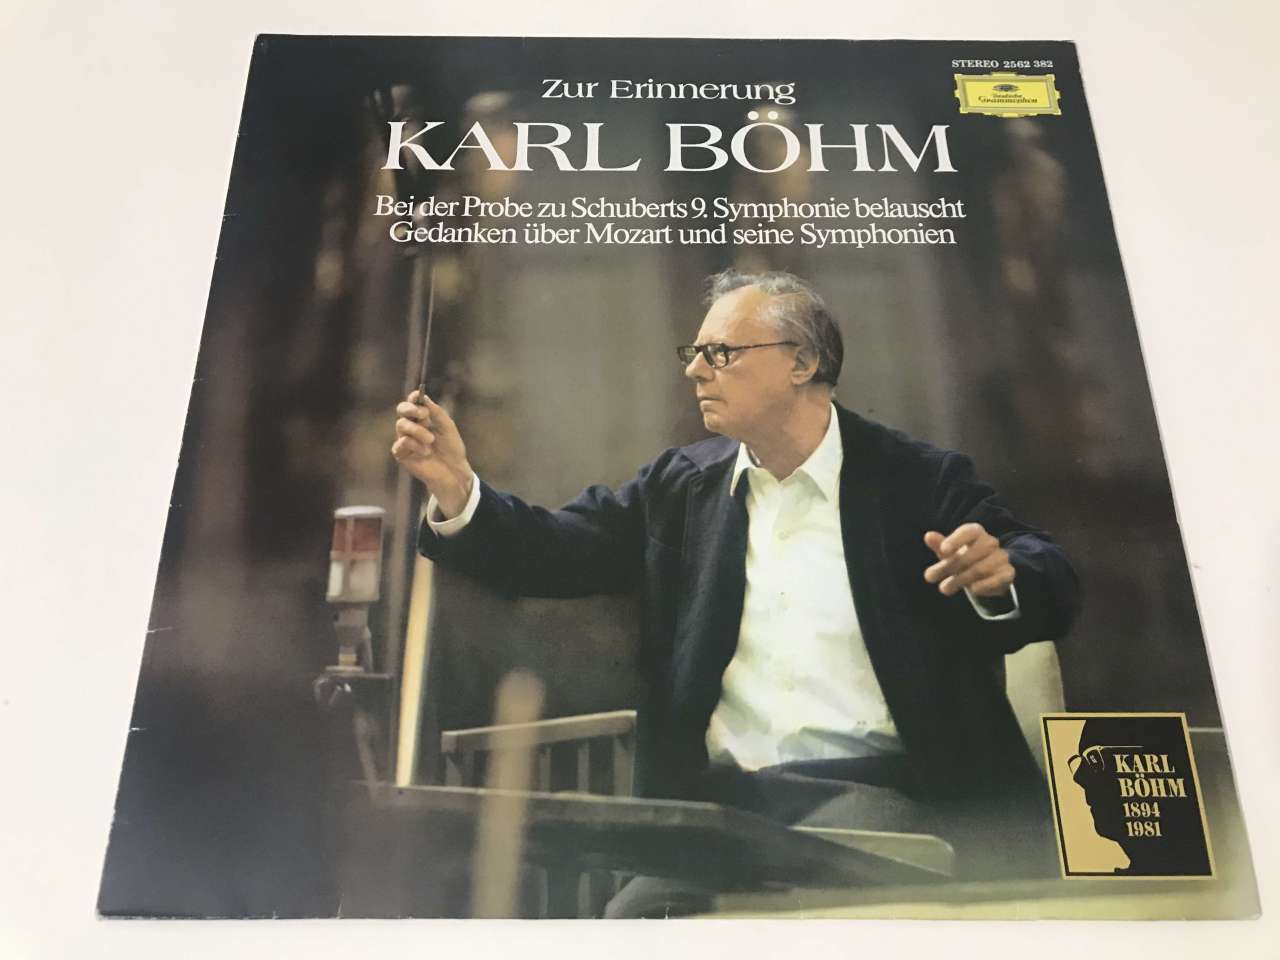 Zur Erinnerung Karl Böhm (Bei Der Probe Zu Schuberts 9. Symphonie Belauscht / Gedanken Über Mozart Und Seine Symphonien)